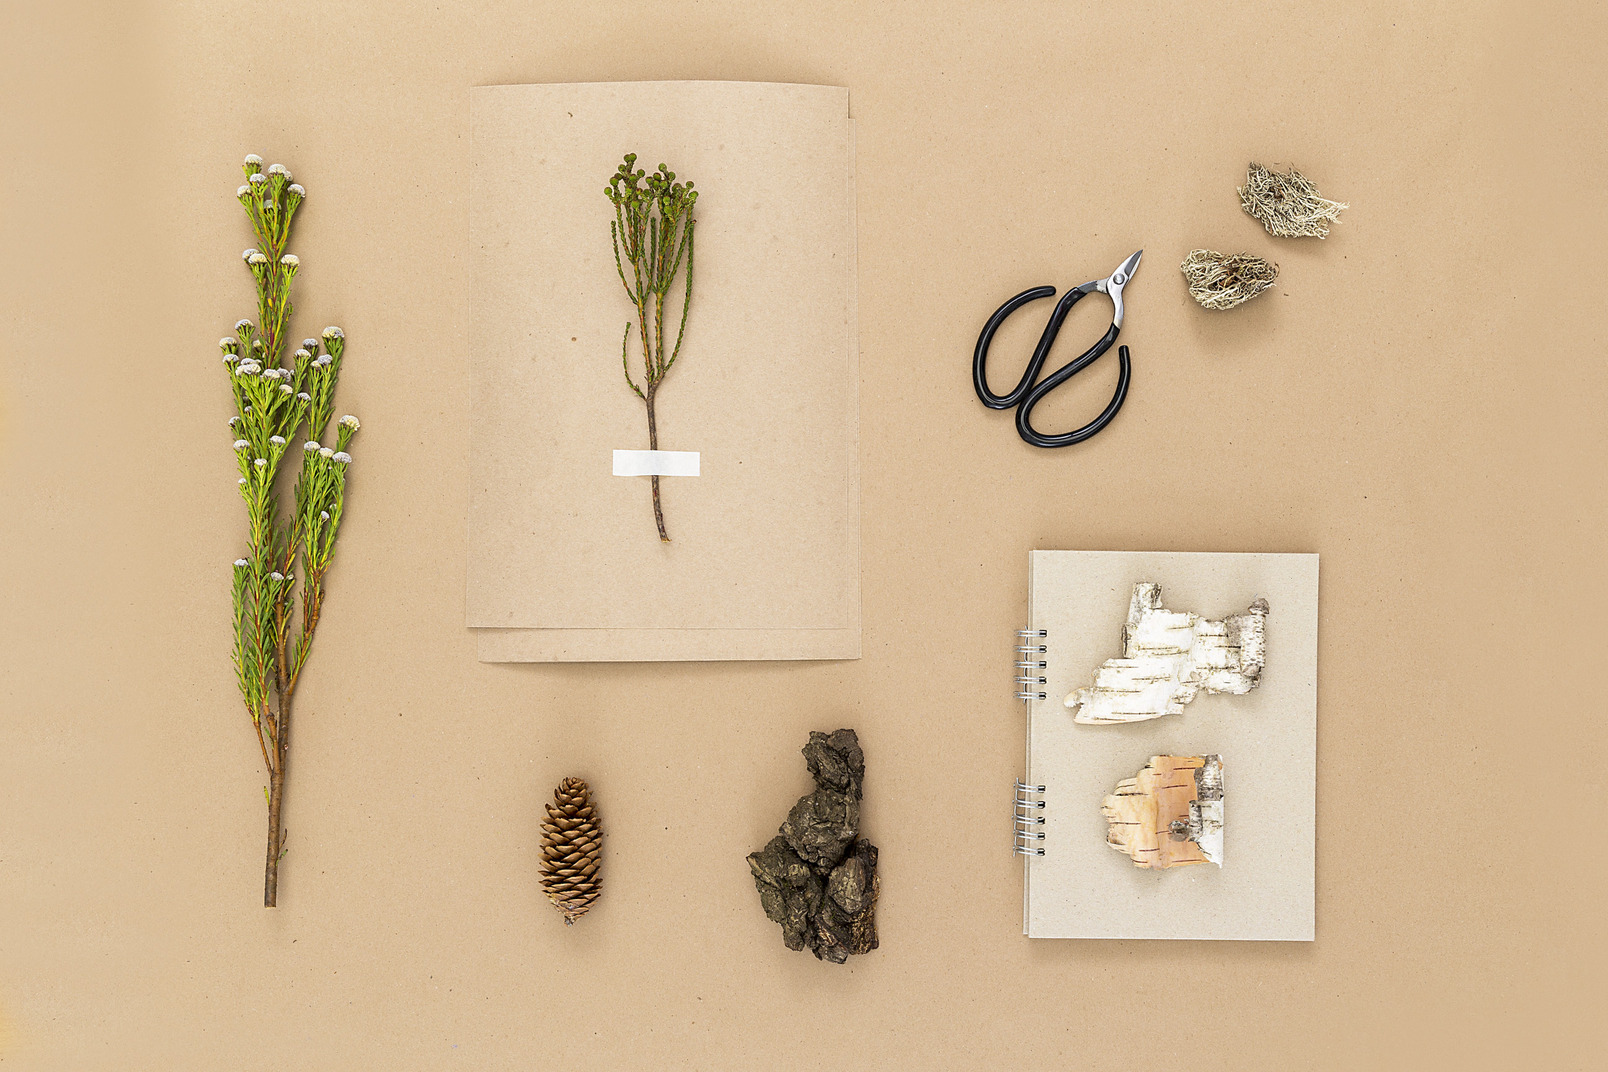 Make your own herbarium